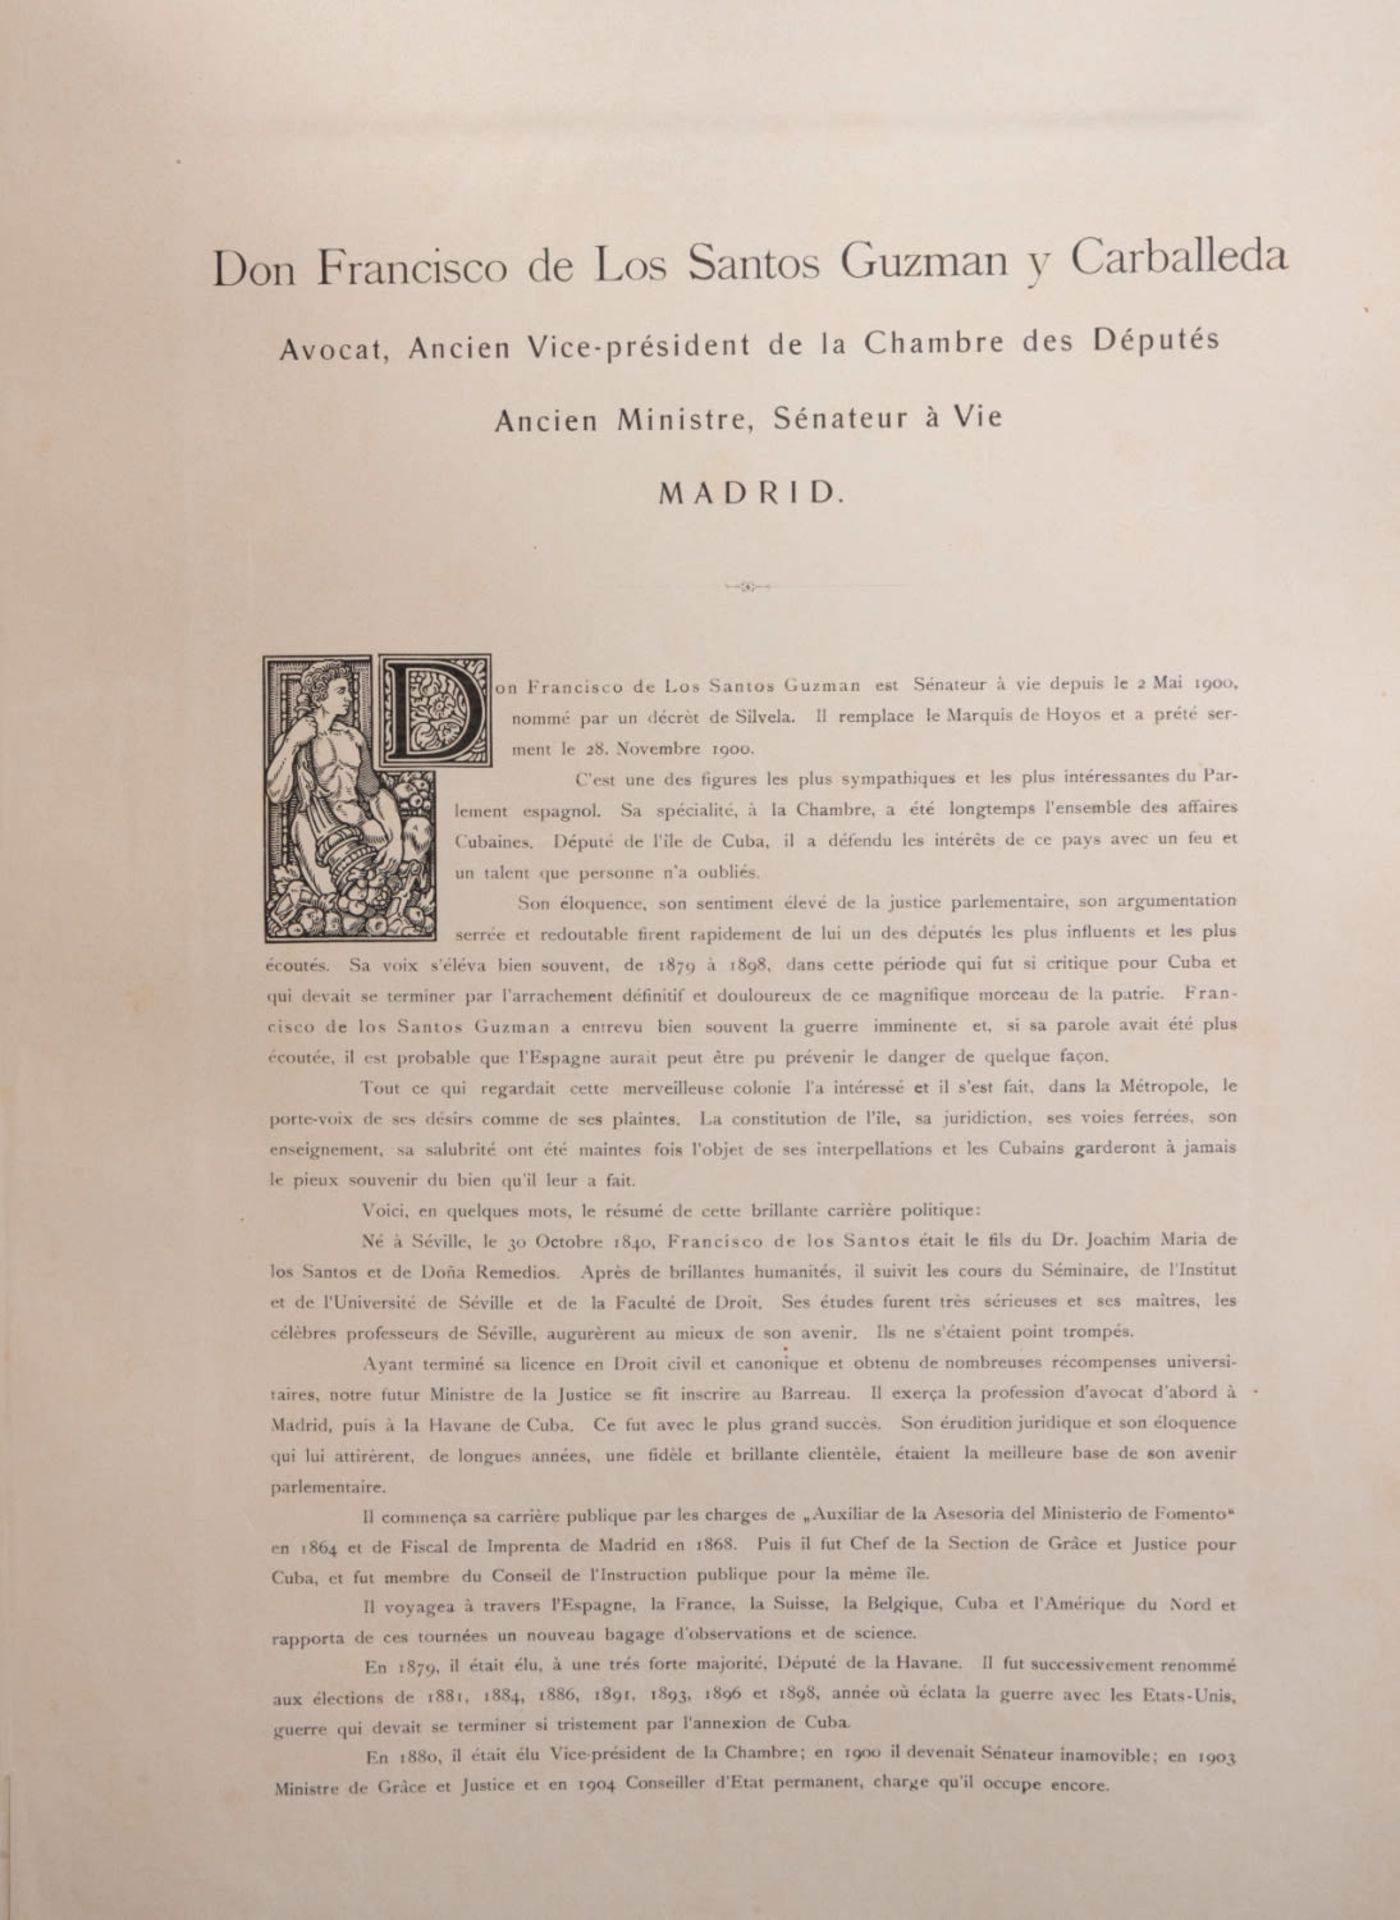 Book "l'Espagne Contemporaine", 19th century - Bild 7 aus 8